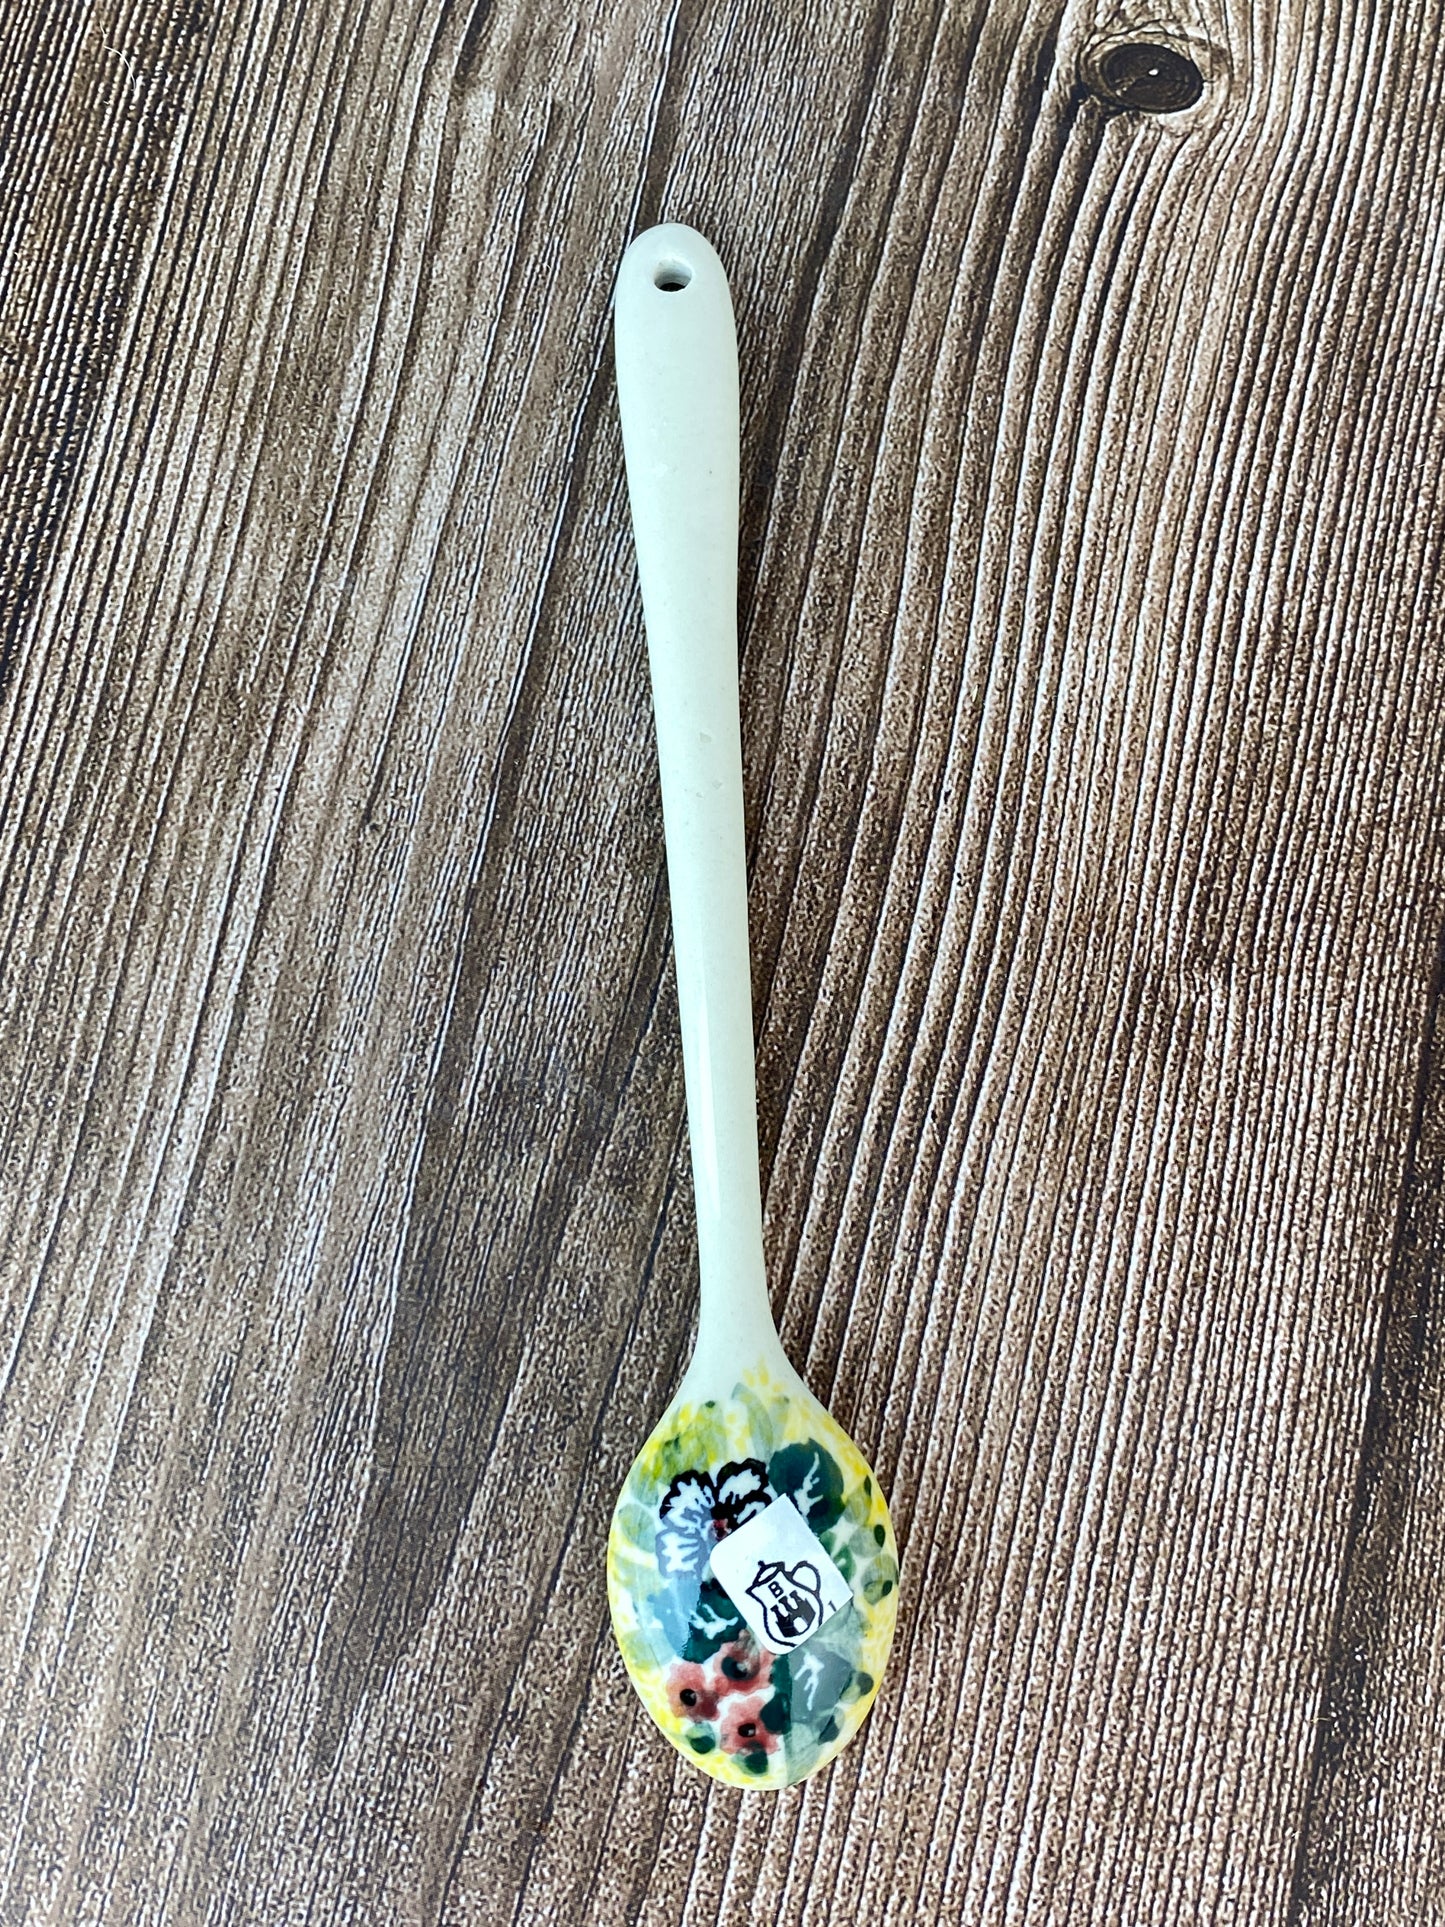 Unikat Iced Tea Spoon - Shape B93 - Pattern U4288